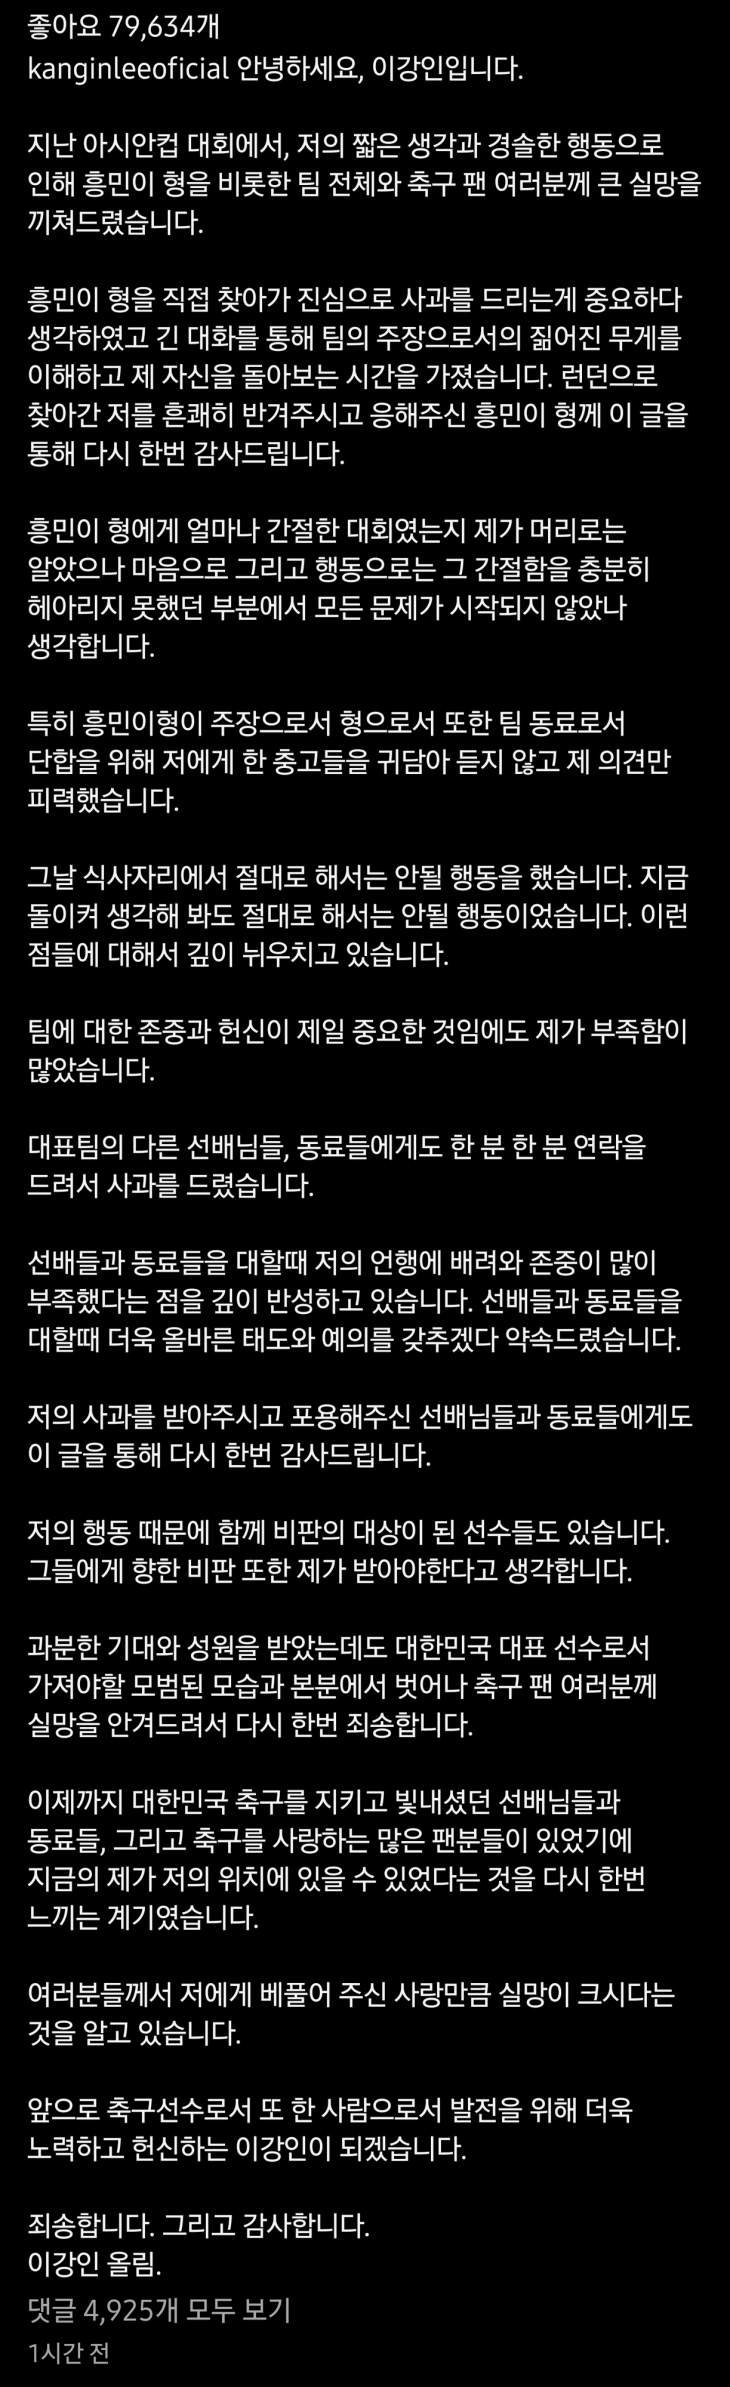 이강인이 21일 “해서는 안 될 행동을 했다”고 밝힌 사과문. 이강인 인스타그램 캡처